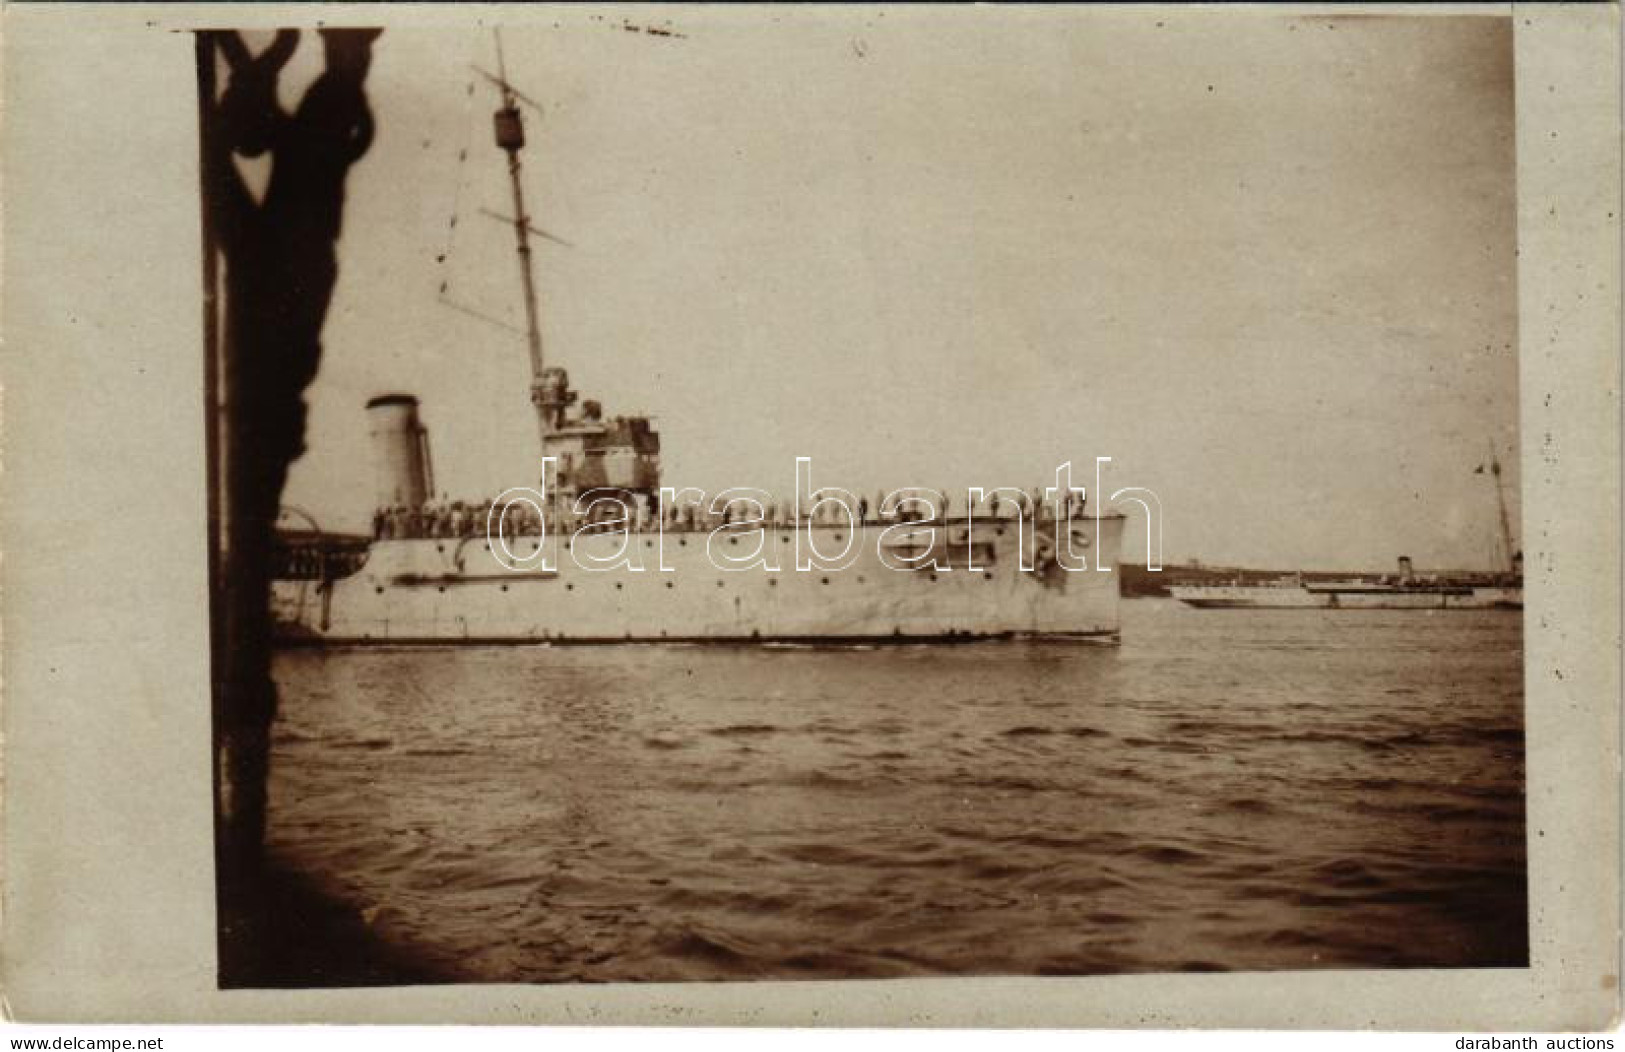 * T2/T3 1917 SMS SAIDA Osztrák-Magyar Haditengerészet Novara-osztályú Gyorscirkálója Az Otranttó-i Csata Után / Rapidkre - Unclassified